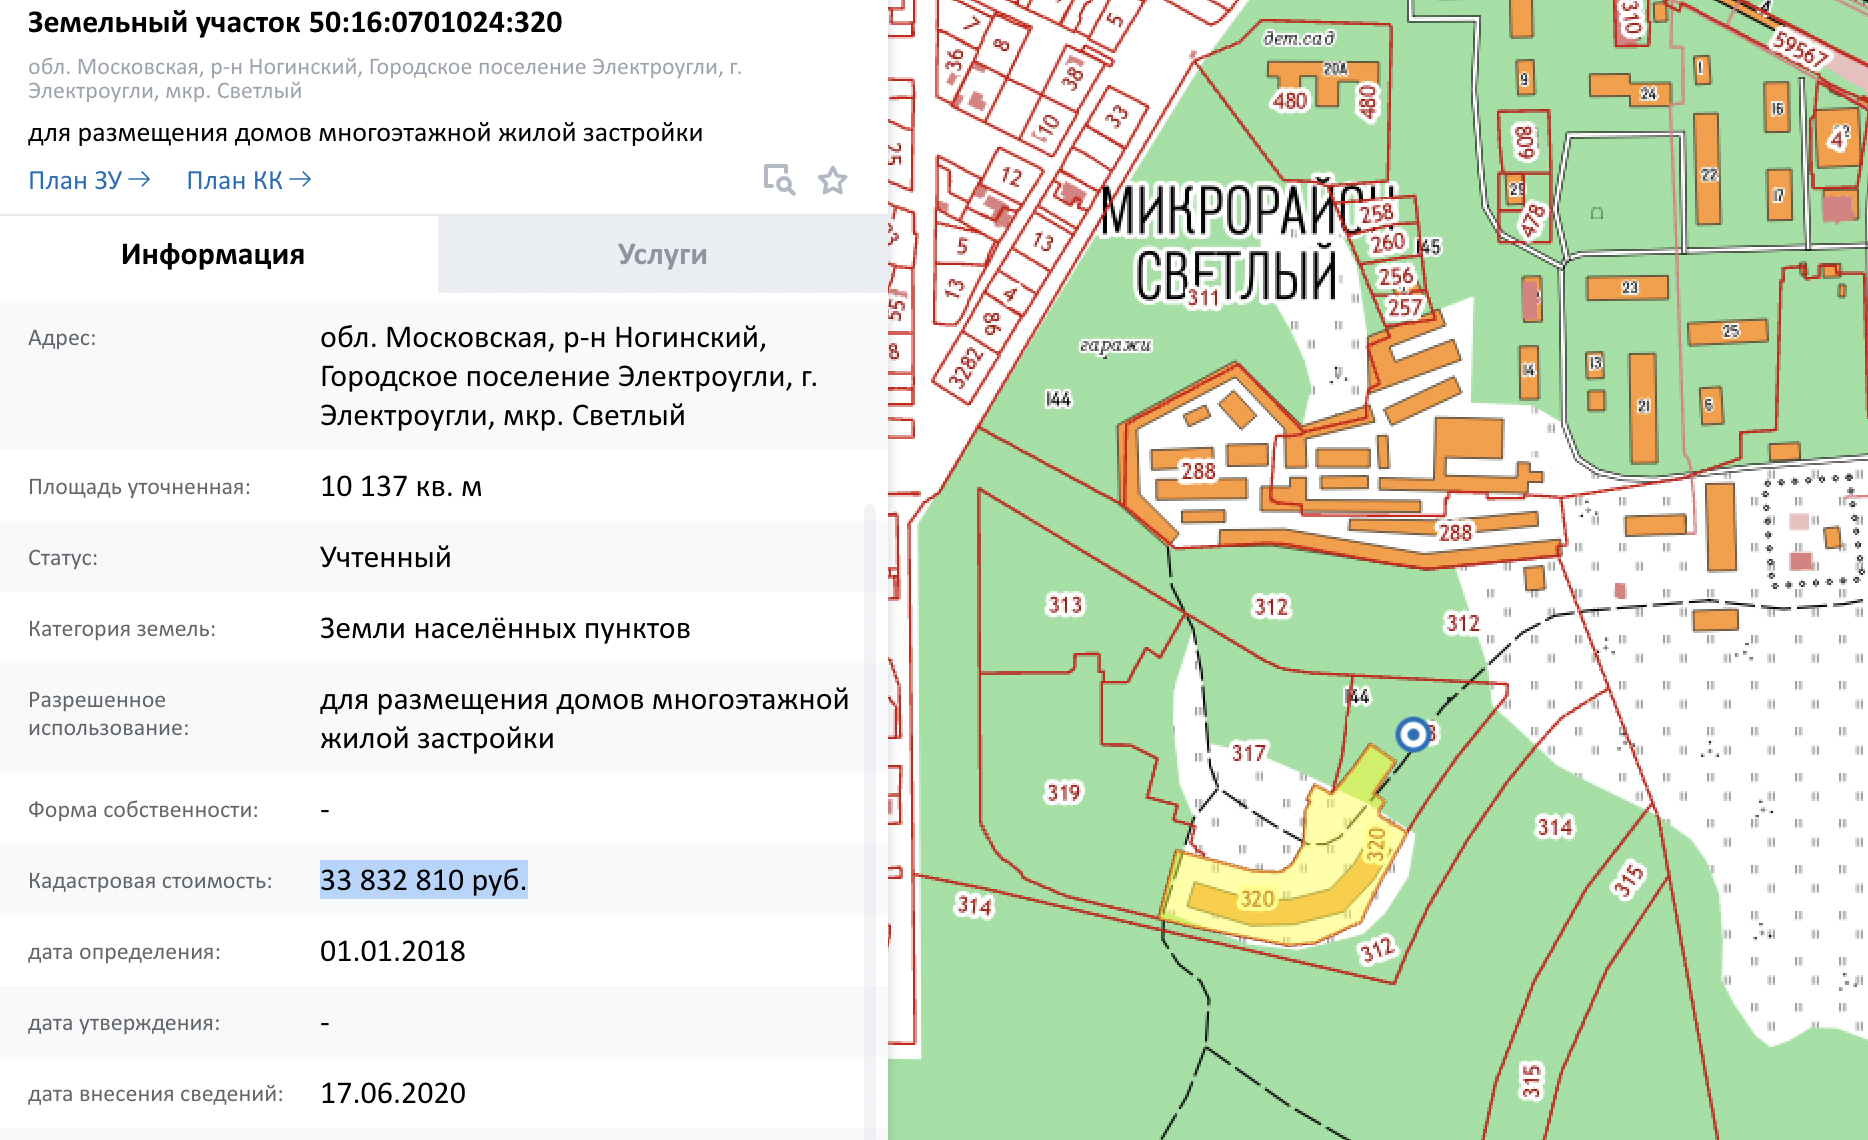 Заброшенный ЖК «Светлый город» в 30 км от Москвы. Узнал стоимость участка на котором он расположен 😱🏚🤦‍♂️5